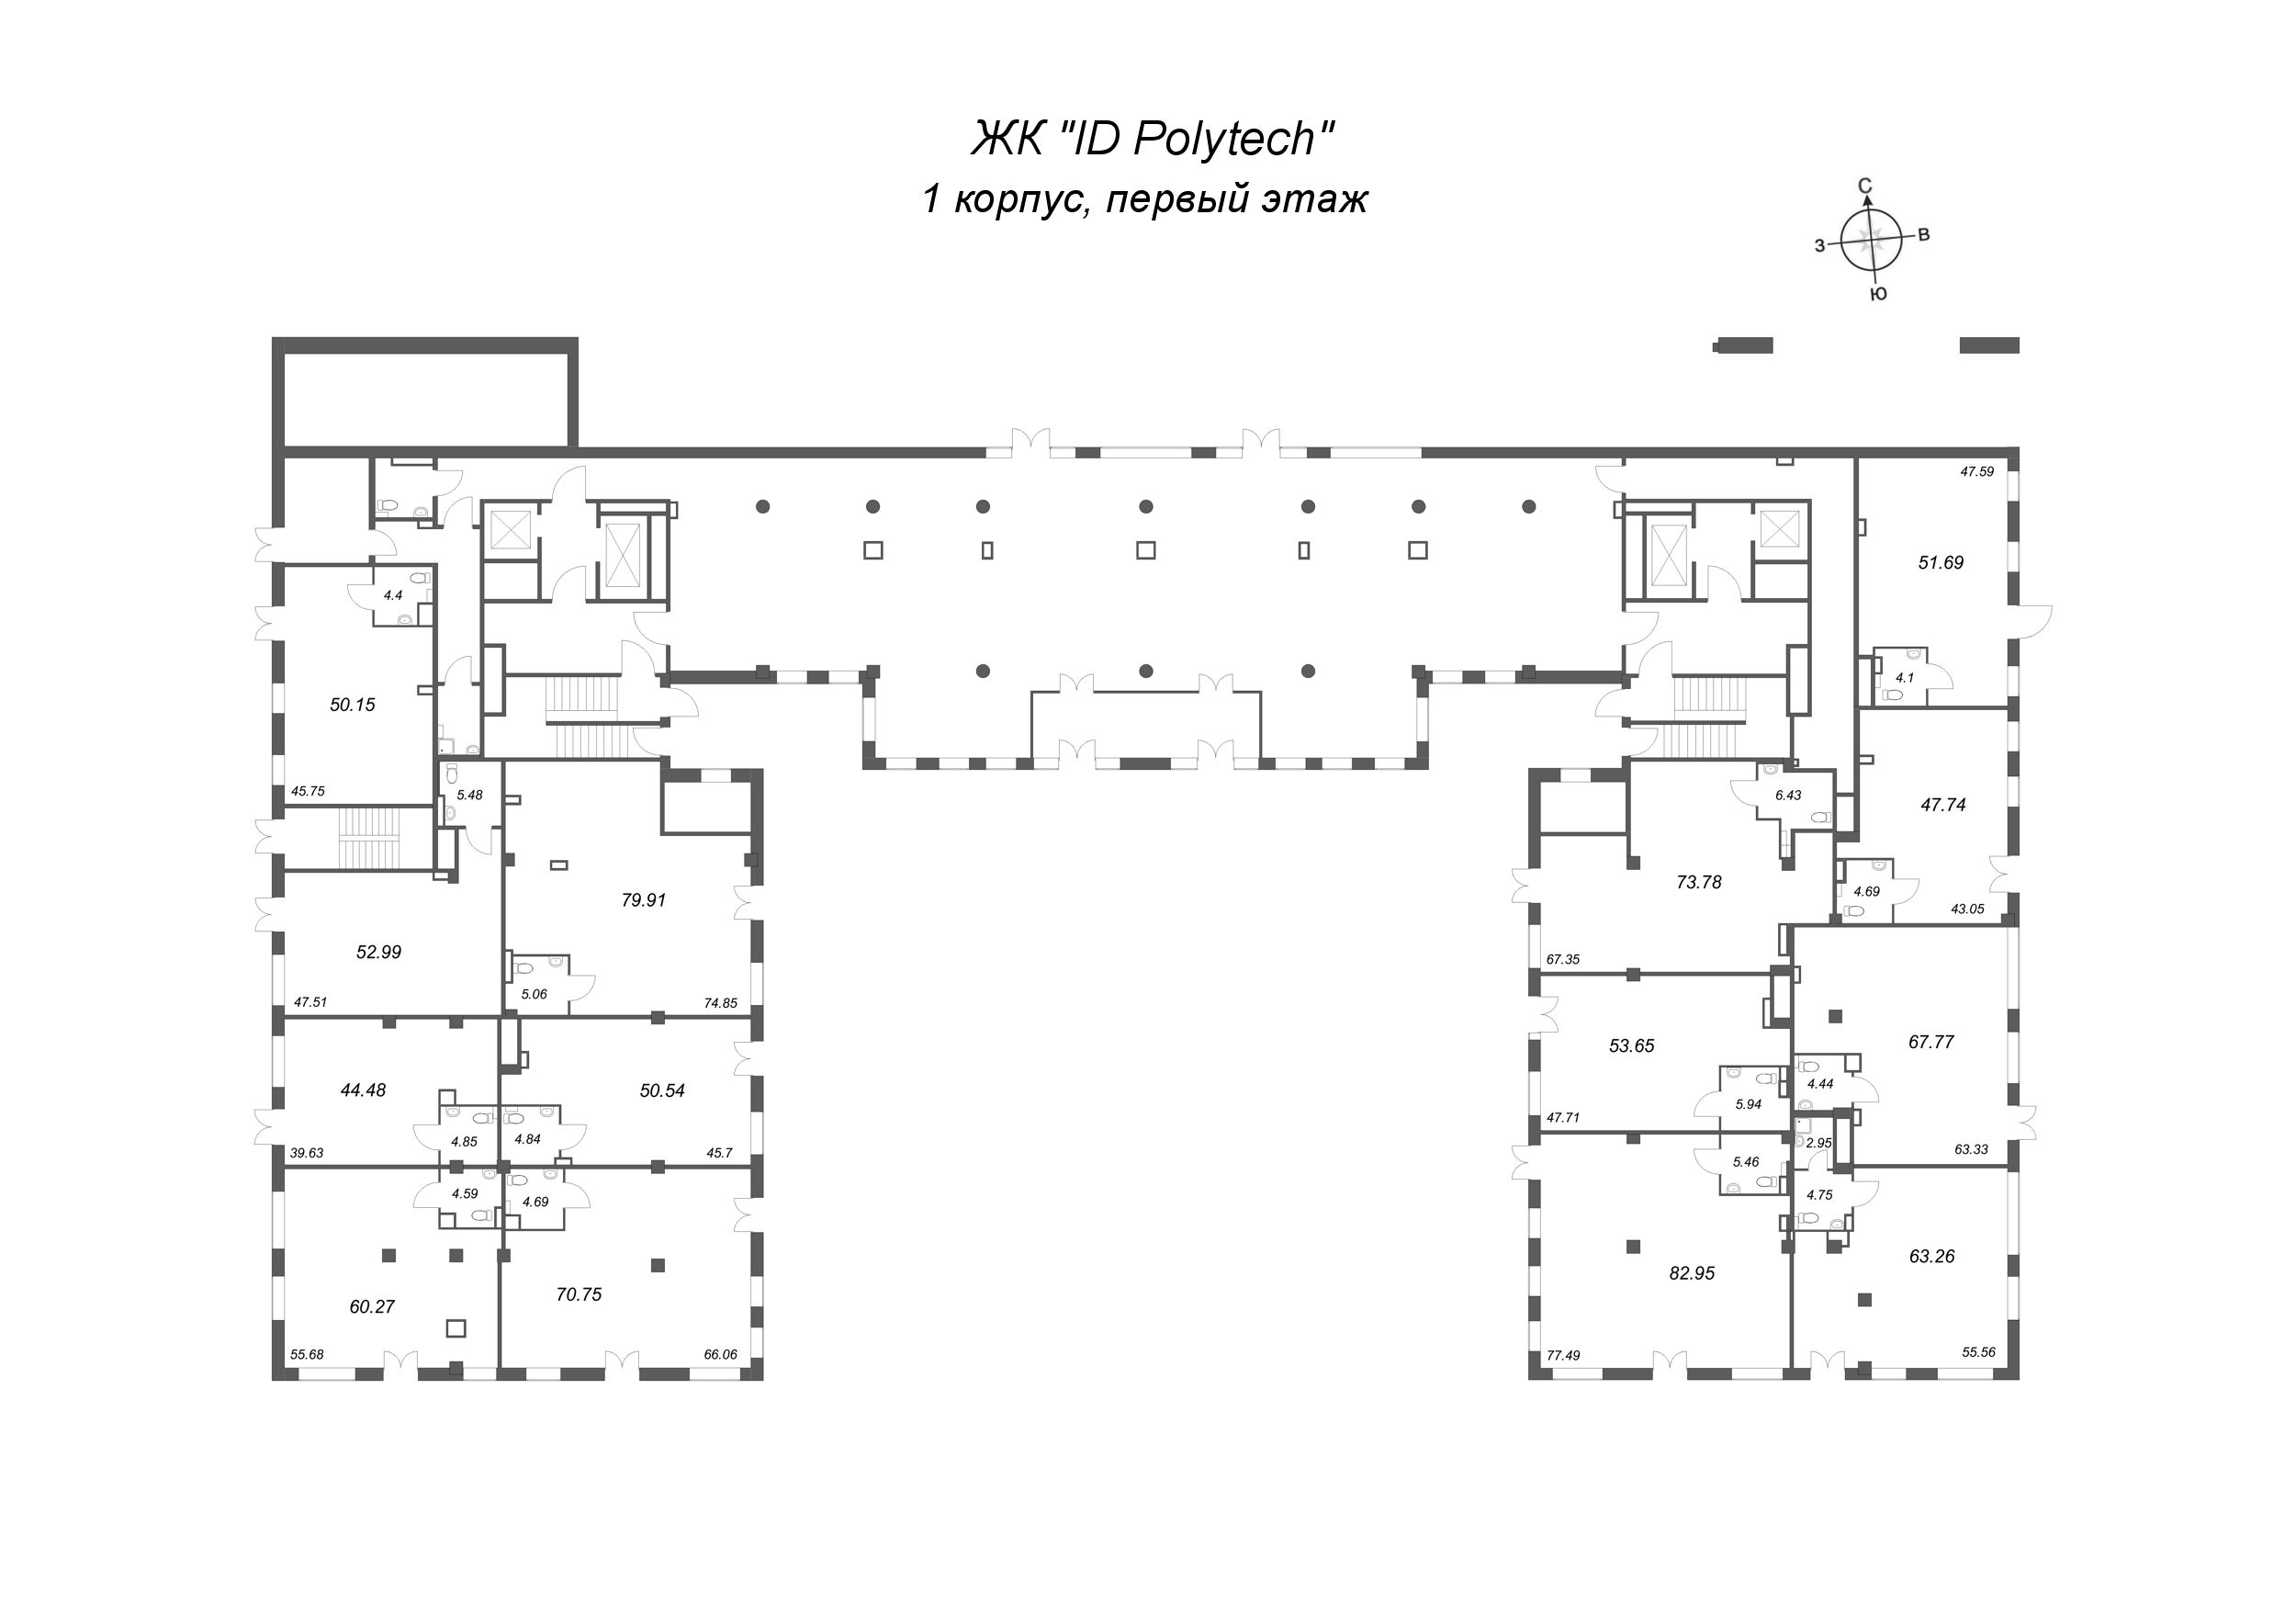 Помещение, 47.74 м² - планировка этажа